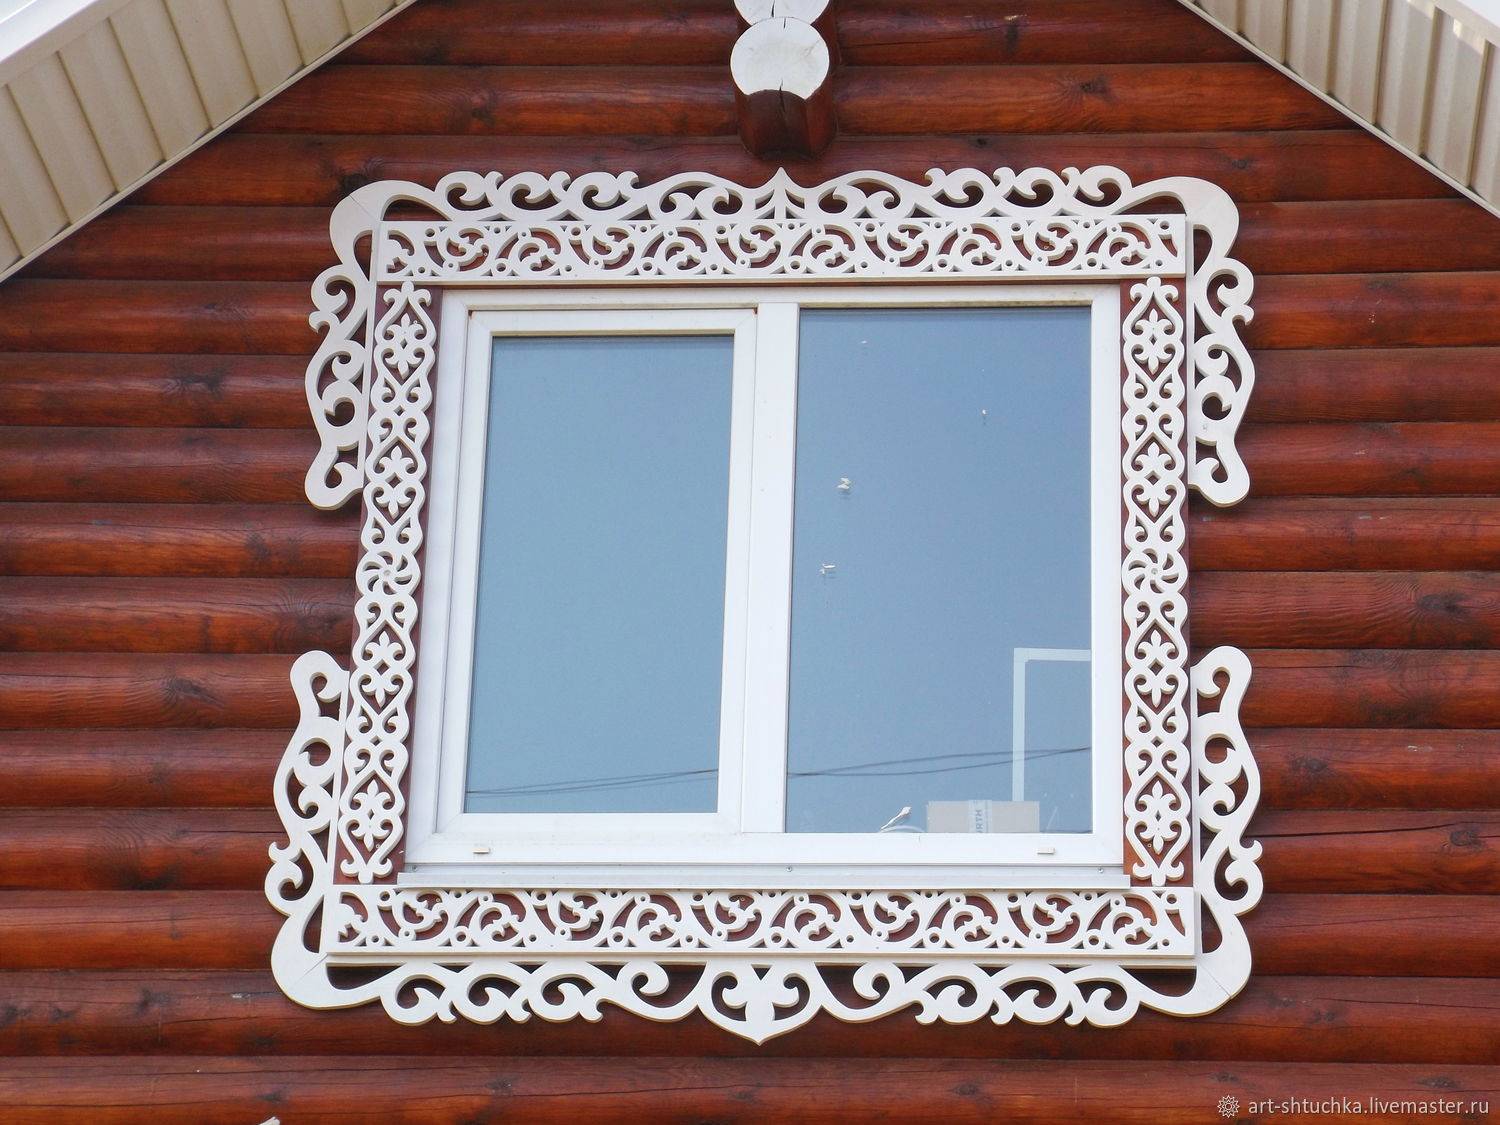 Наличники на окна внутри деревянного дома - клуб мастеров